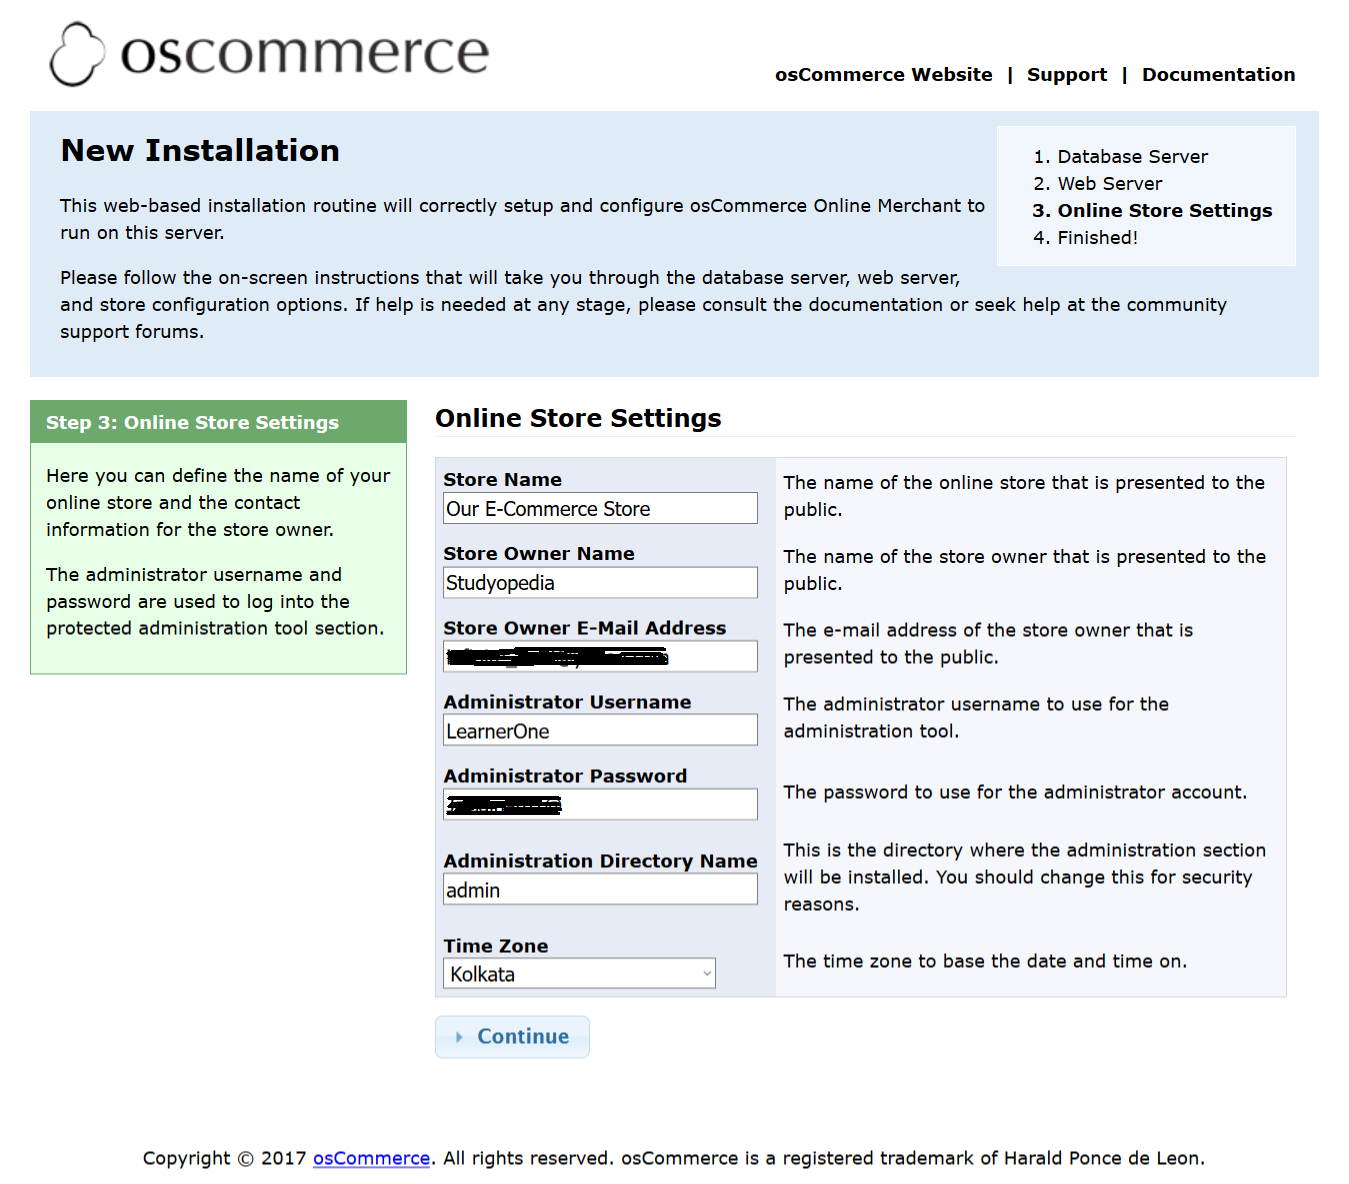 Details added for osCommerce Online Store Settings